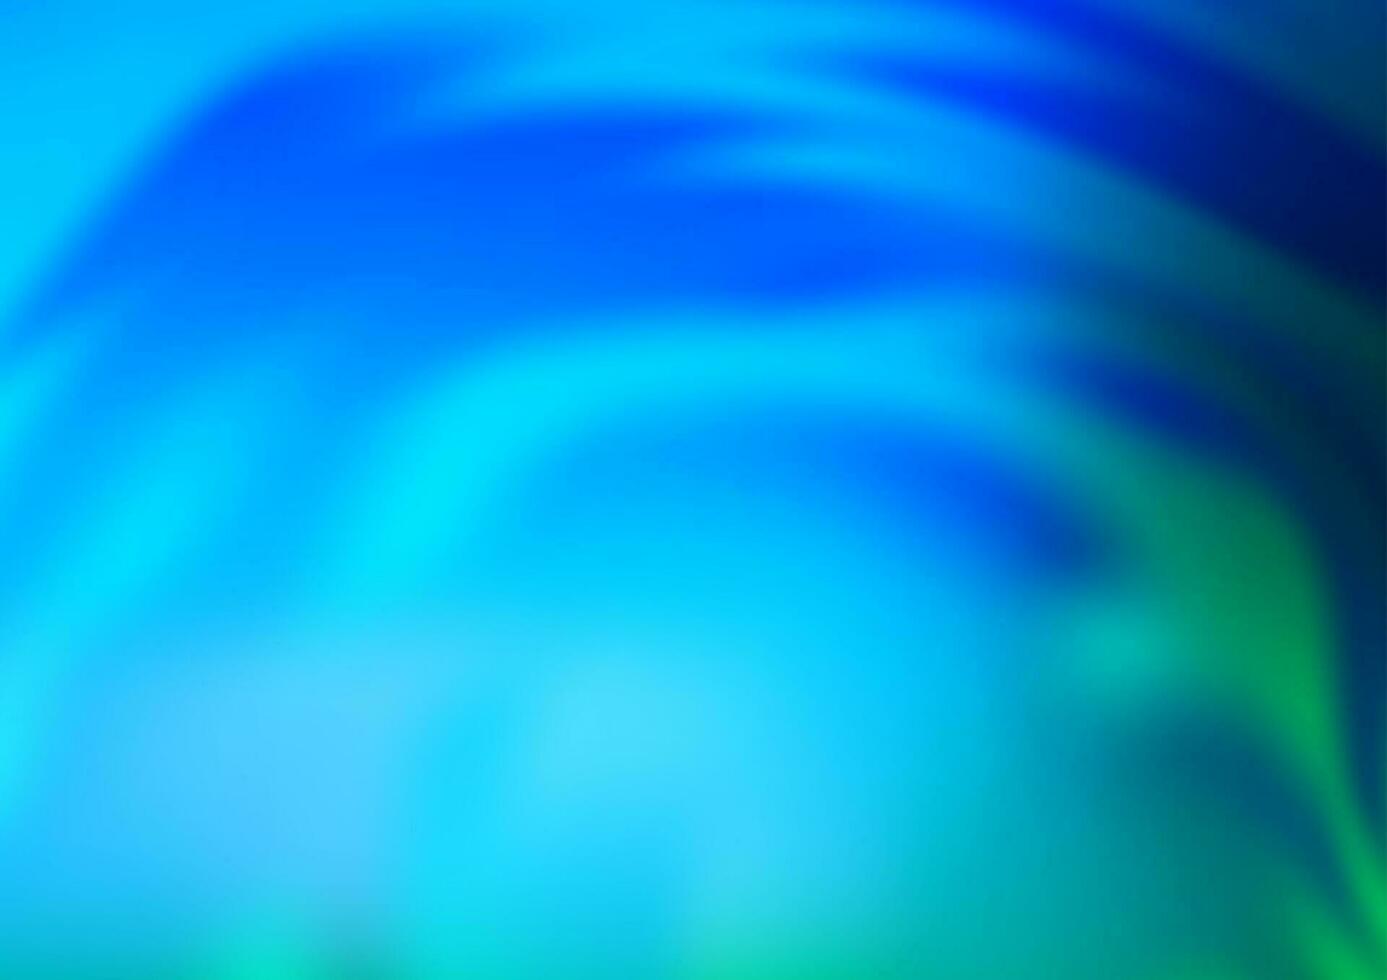 fundo abstrato brilhante do vetor azul, verde claro.